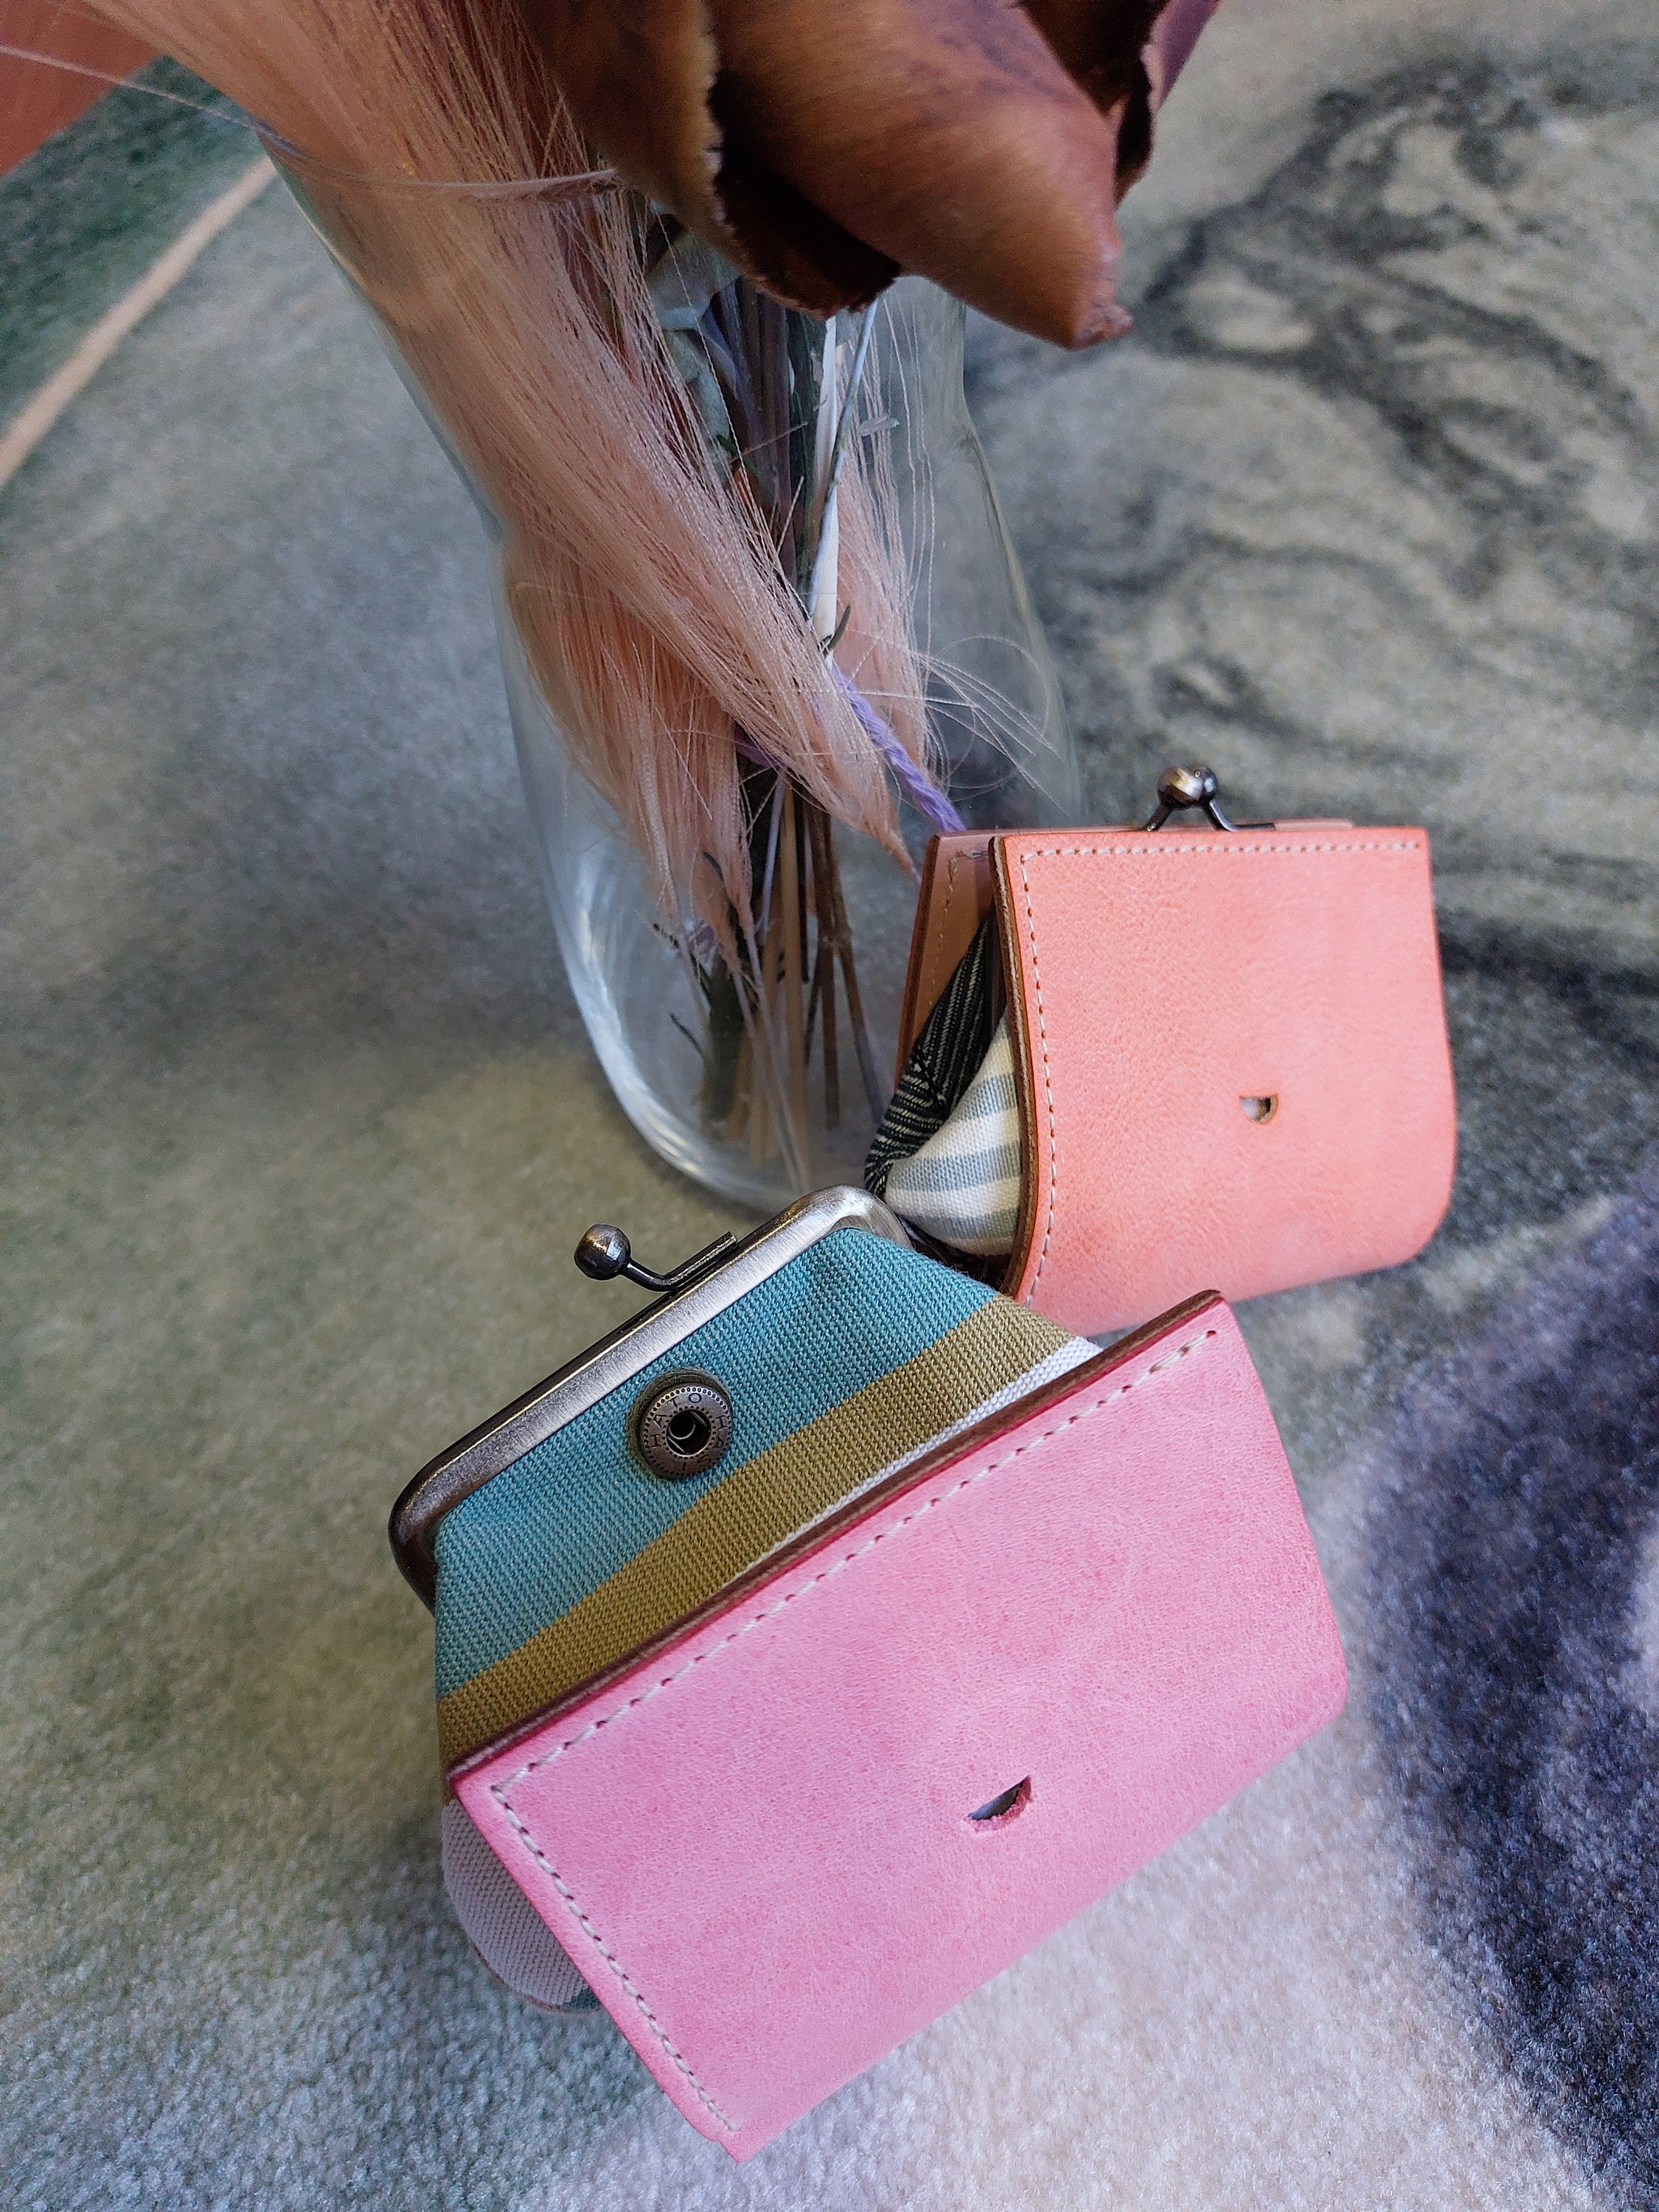 Mini Coin Purse Creative Owl Key Chain Bag Pendant Cute Wallet for